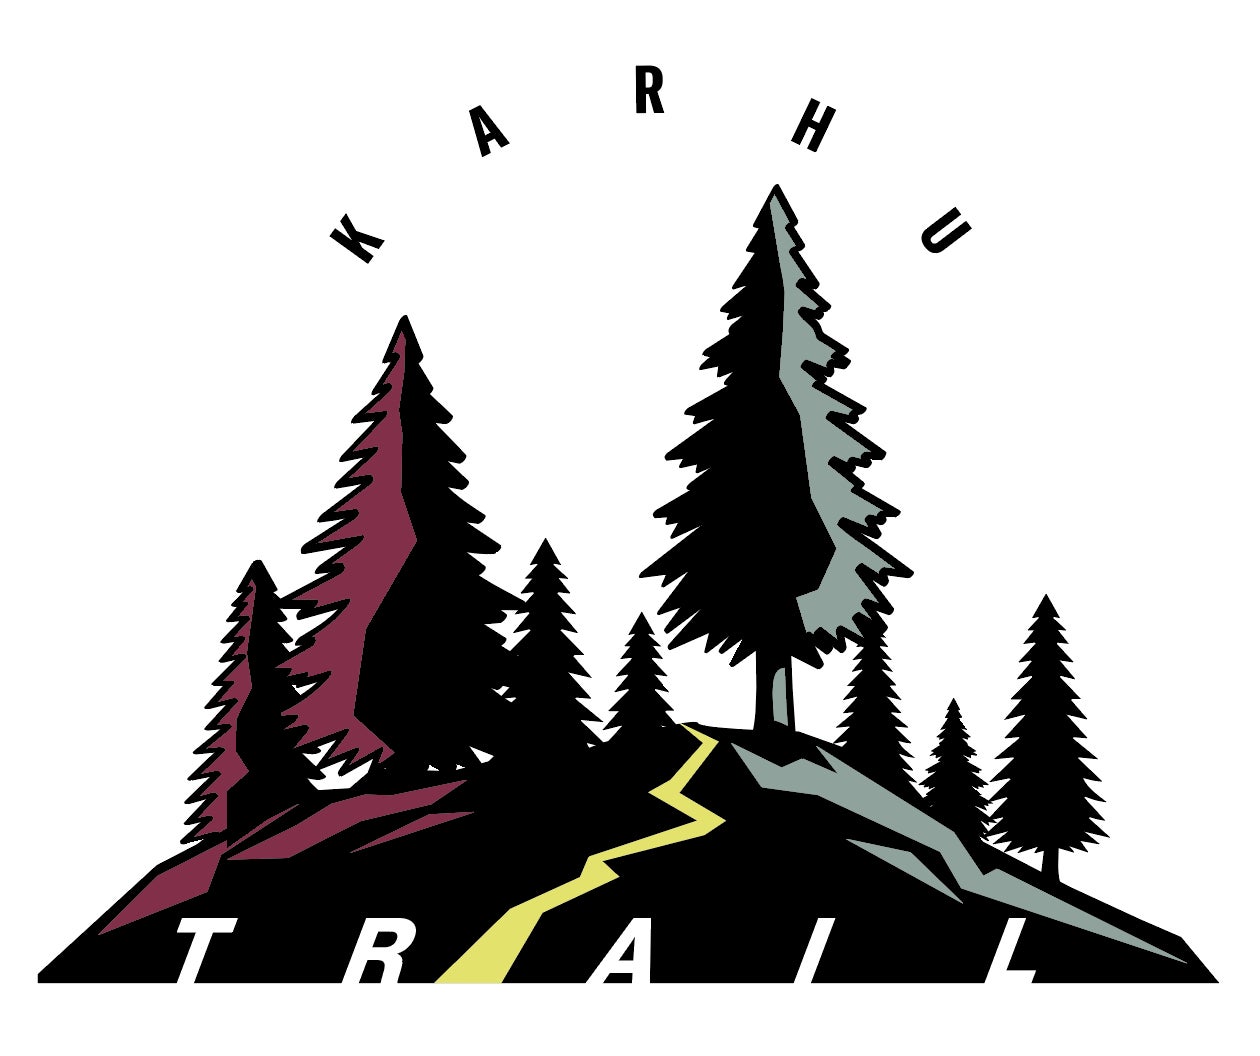 【KARHU】フィンランドの森を駆け巡る旅からインスパイア   トレイルランシューズIKONI TRAILデビューのサブ画像1